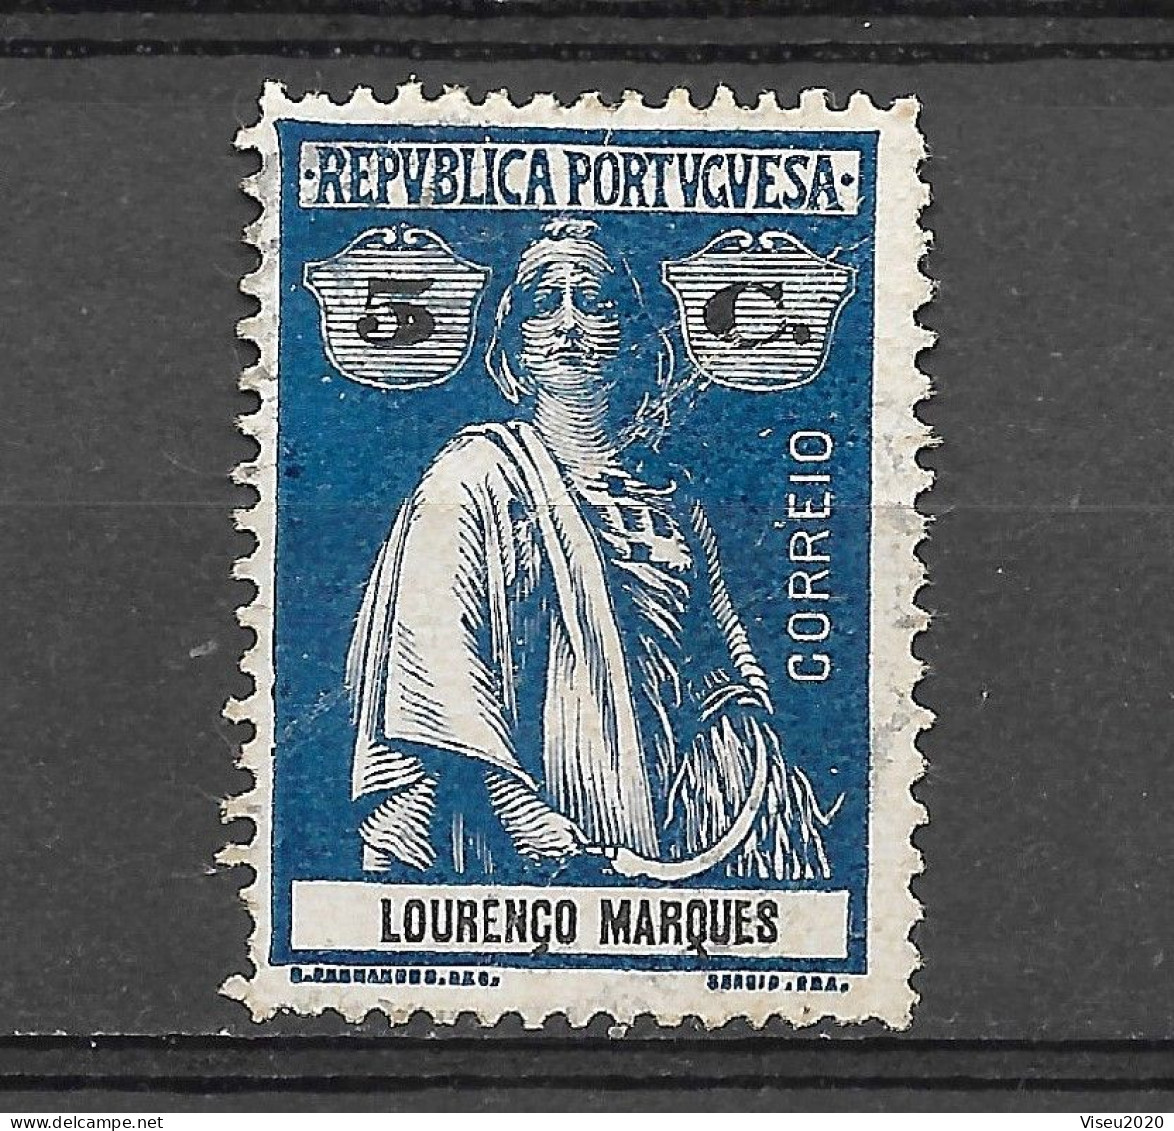 Moçambique Lourenço Marques 1914 -  Tipo CERES - Afinsa 123 - Lourenzo Marques